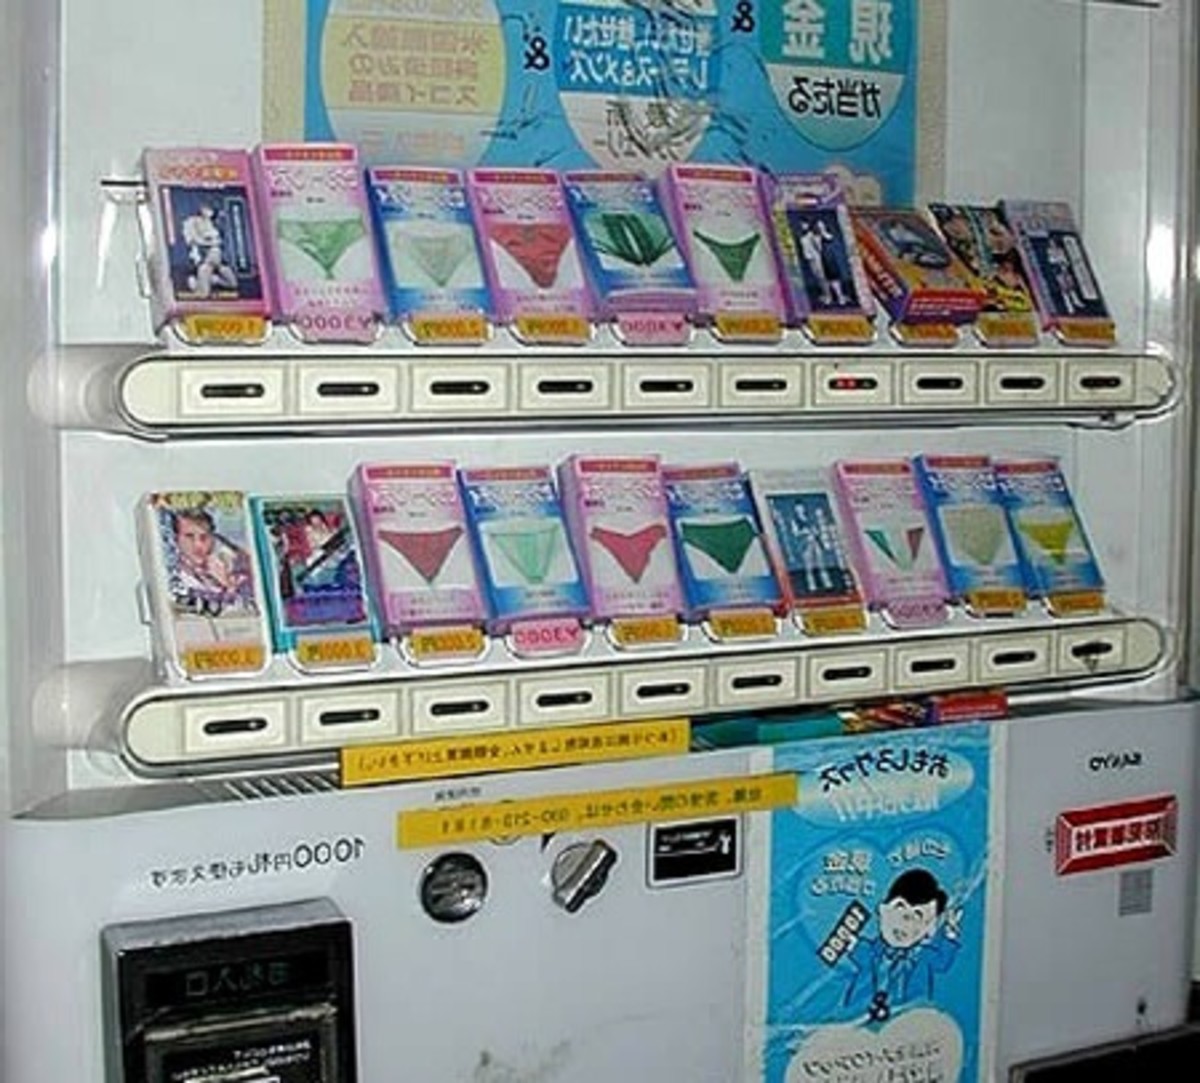 Weird Things Found in Vending Machines, Panties?